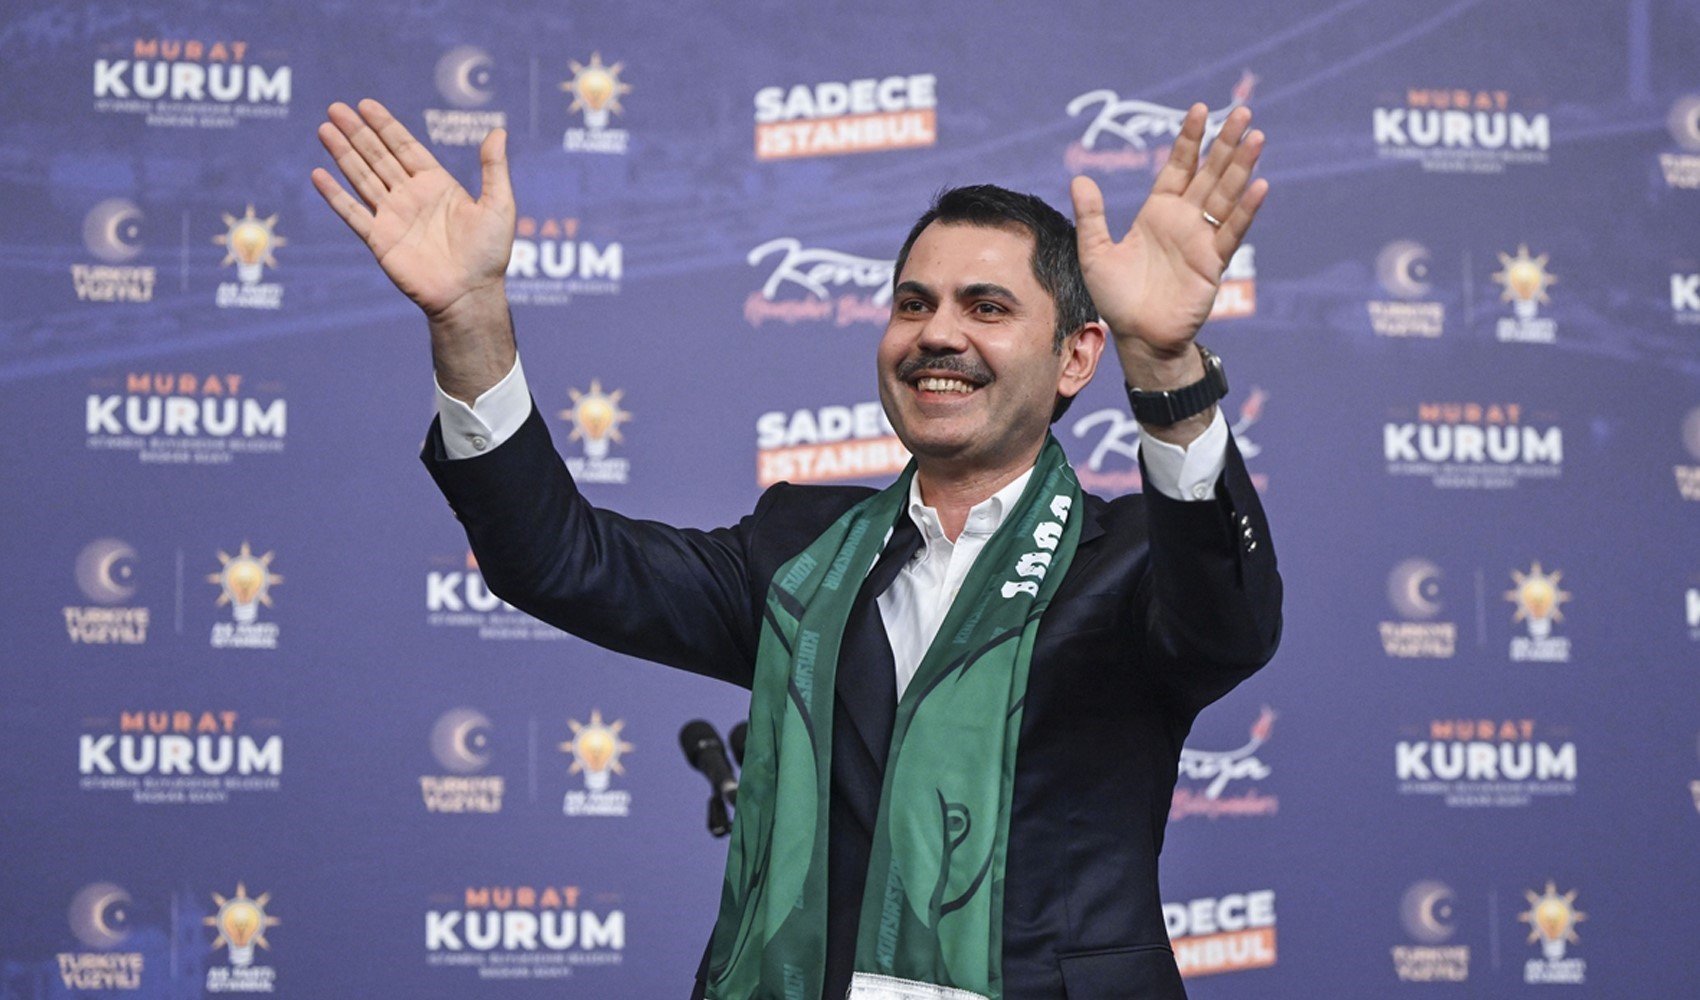 Murat Kurum, Ekrem İmamoğlu ile arasındaki oy farkını açıkladı